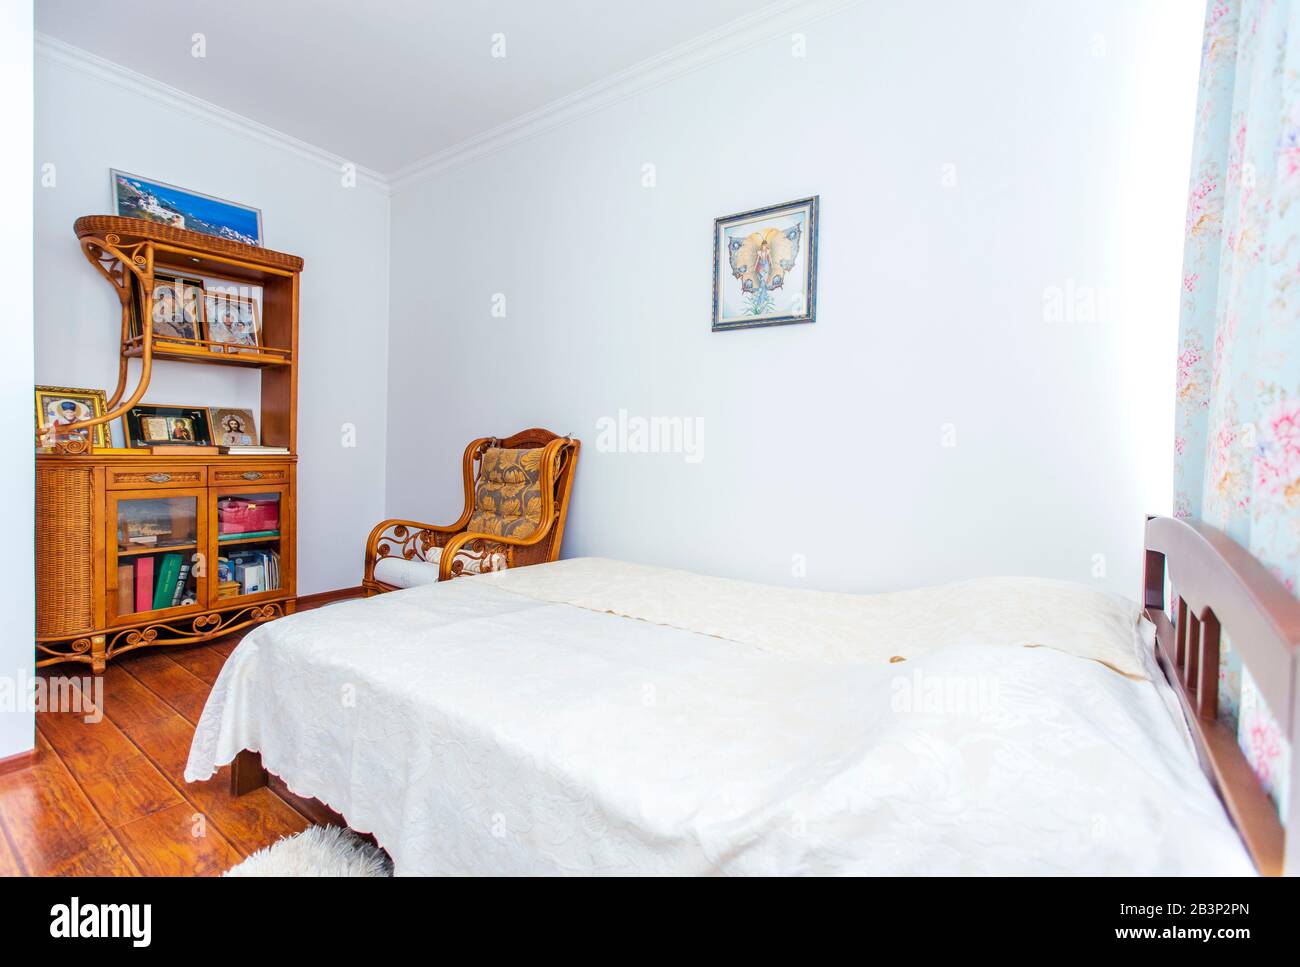 Schlafzimmer mit einem großen Doppelbett aus Holz, einem Schaukelstuhl und vielen christlichen Ikonen auf der Seitenwand gegenüber dem Bett. Stockfoto